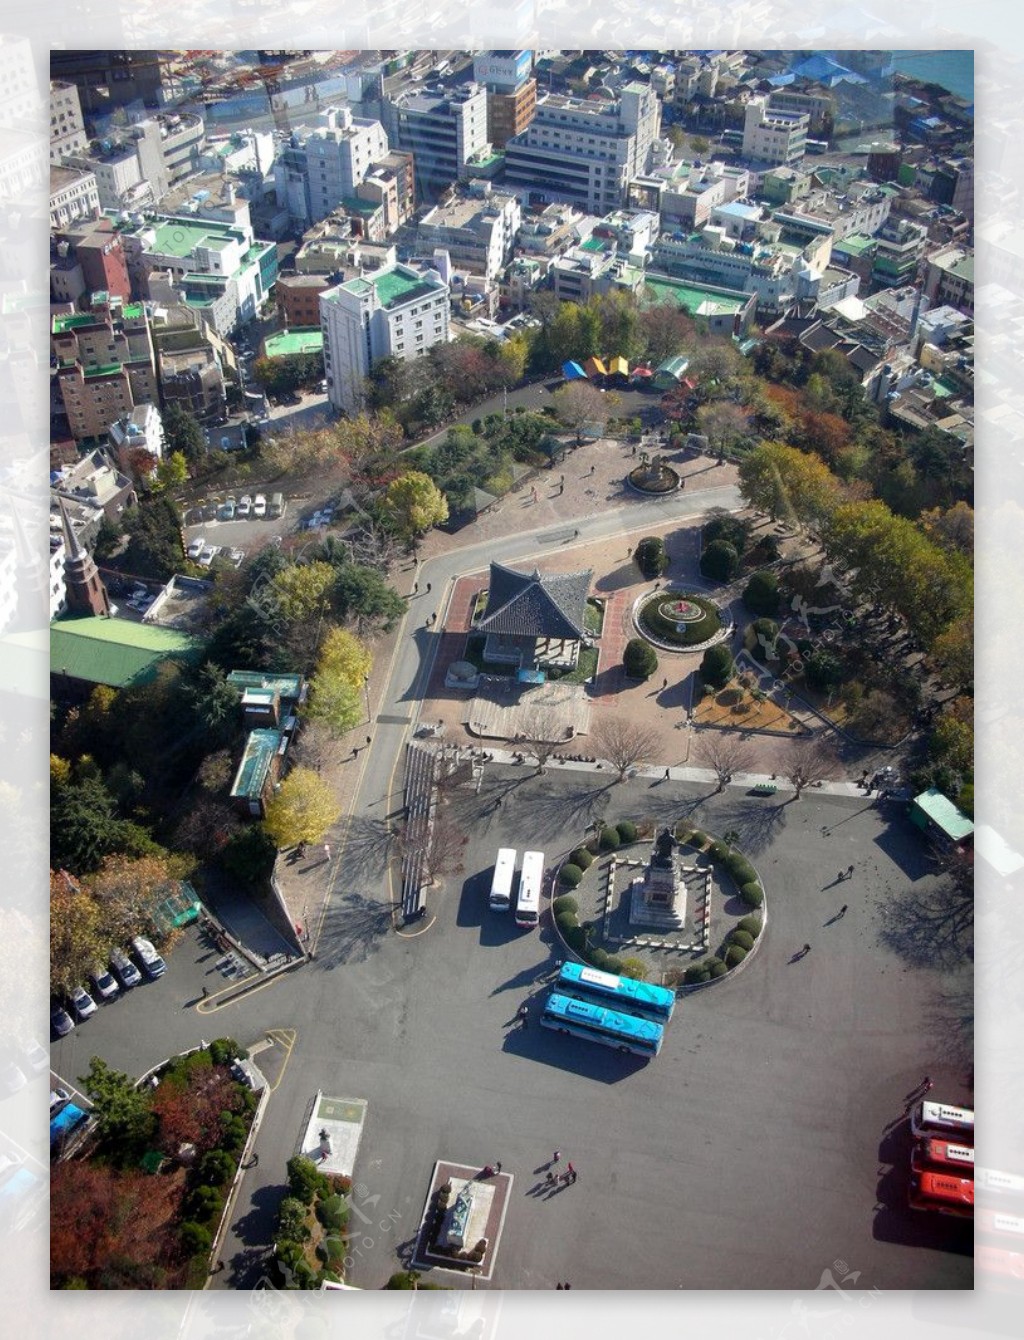 韩国釜山城市风景图片